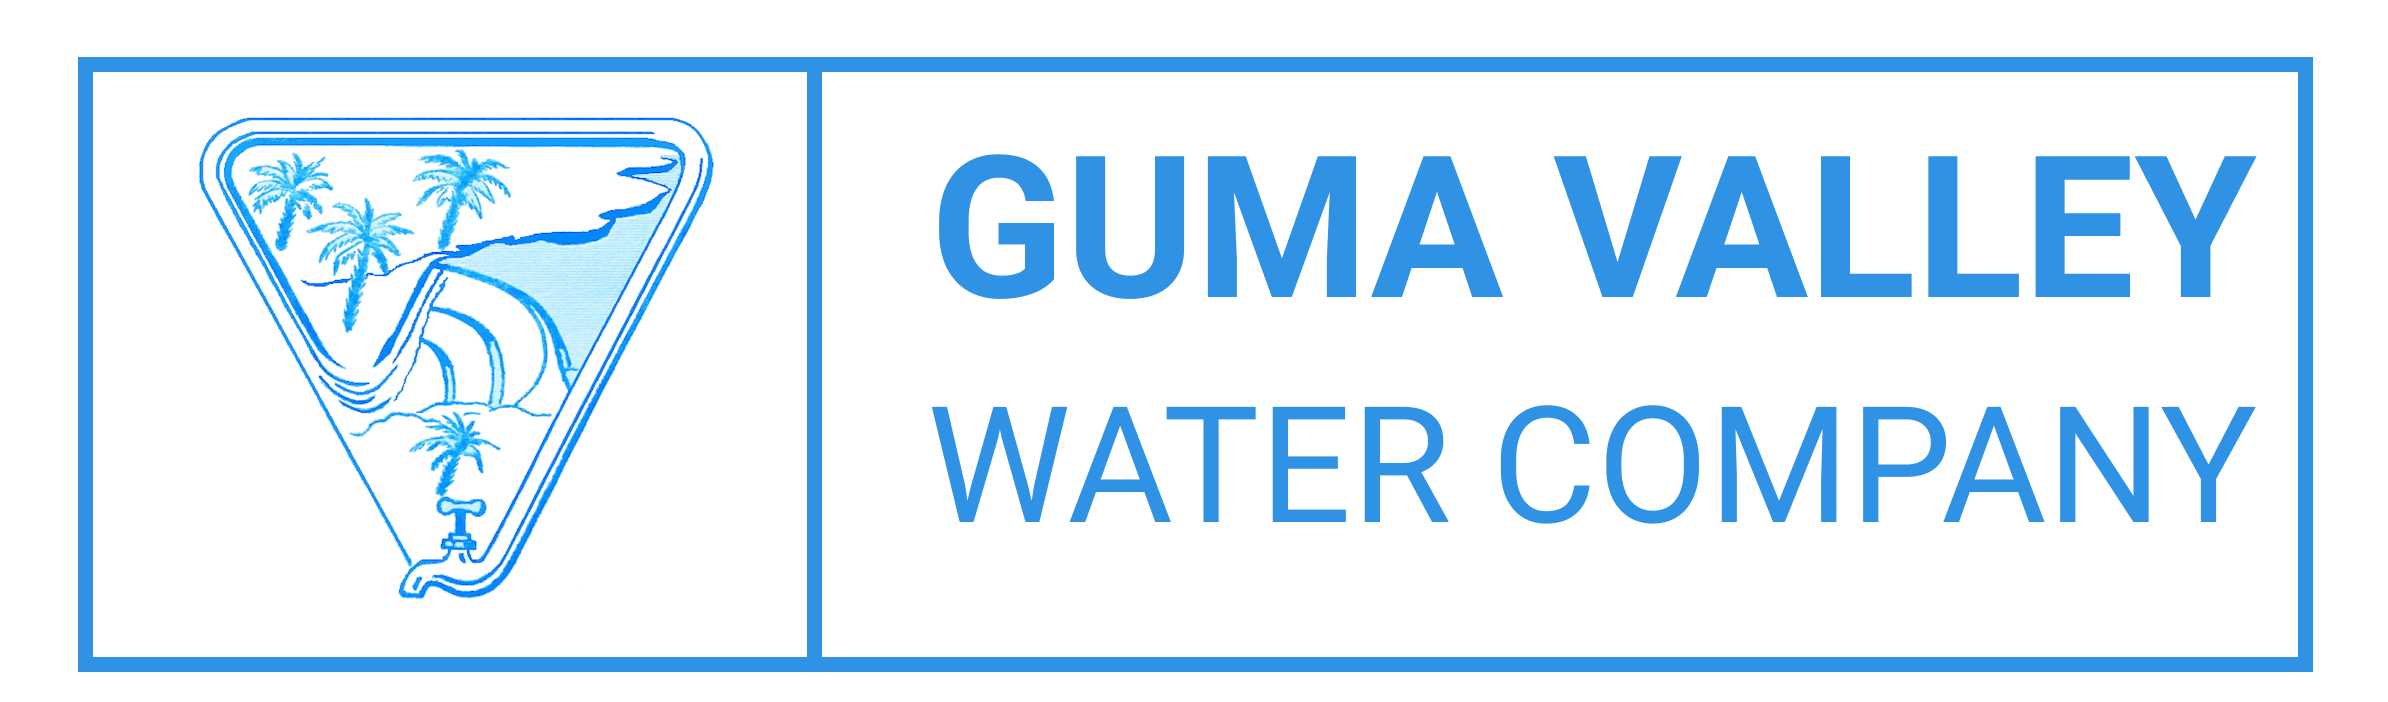 Guma Valley Water Company